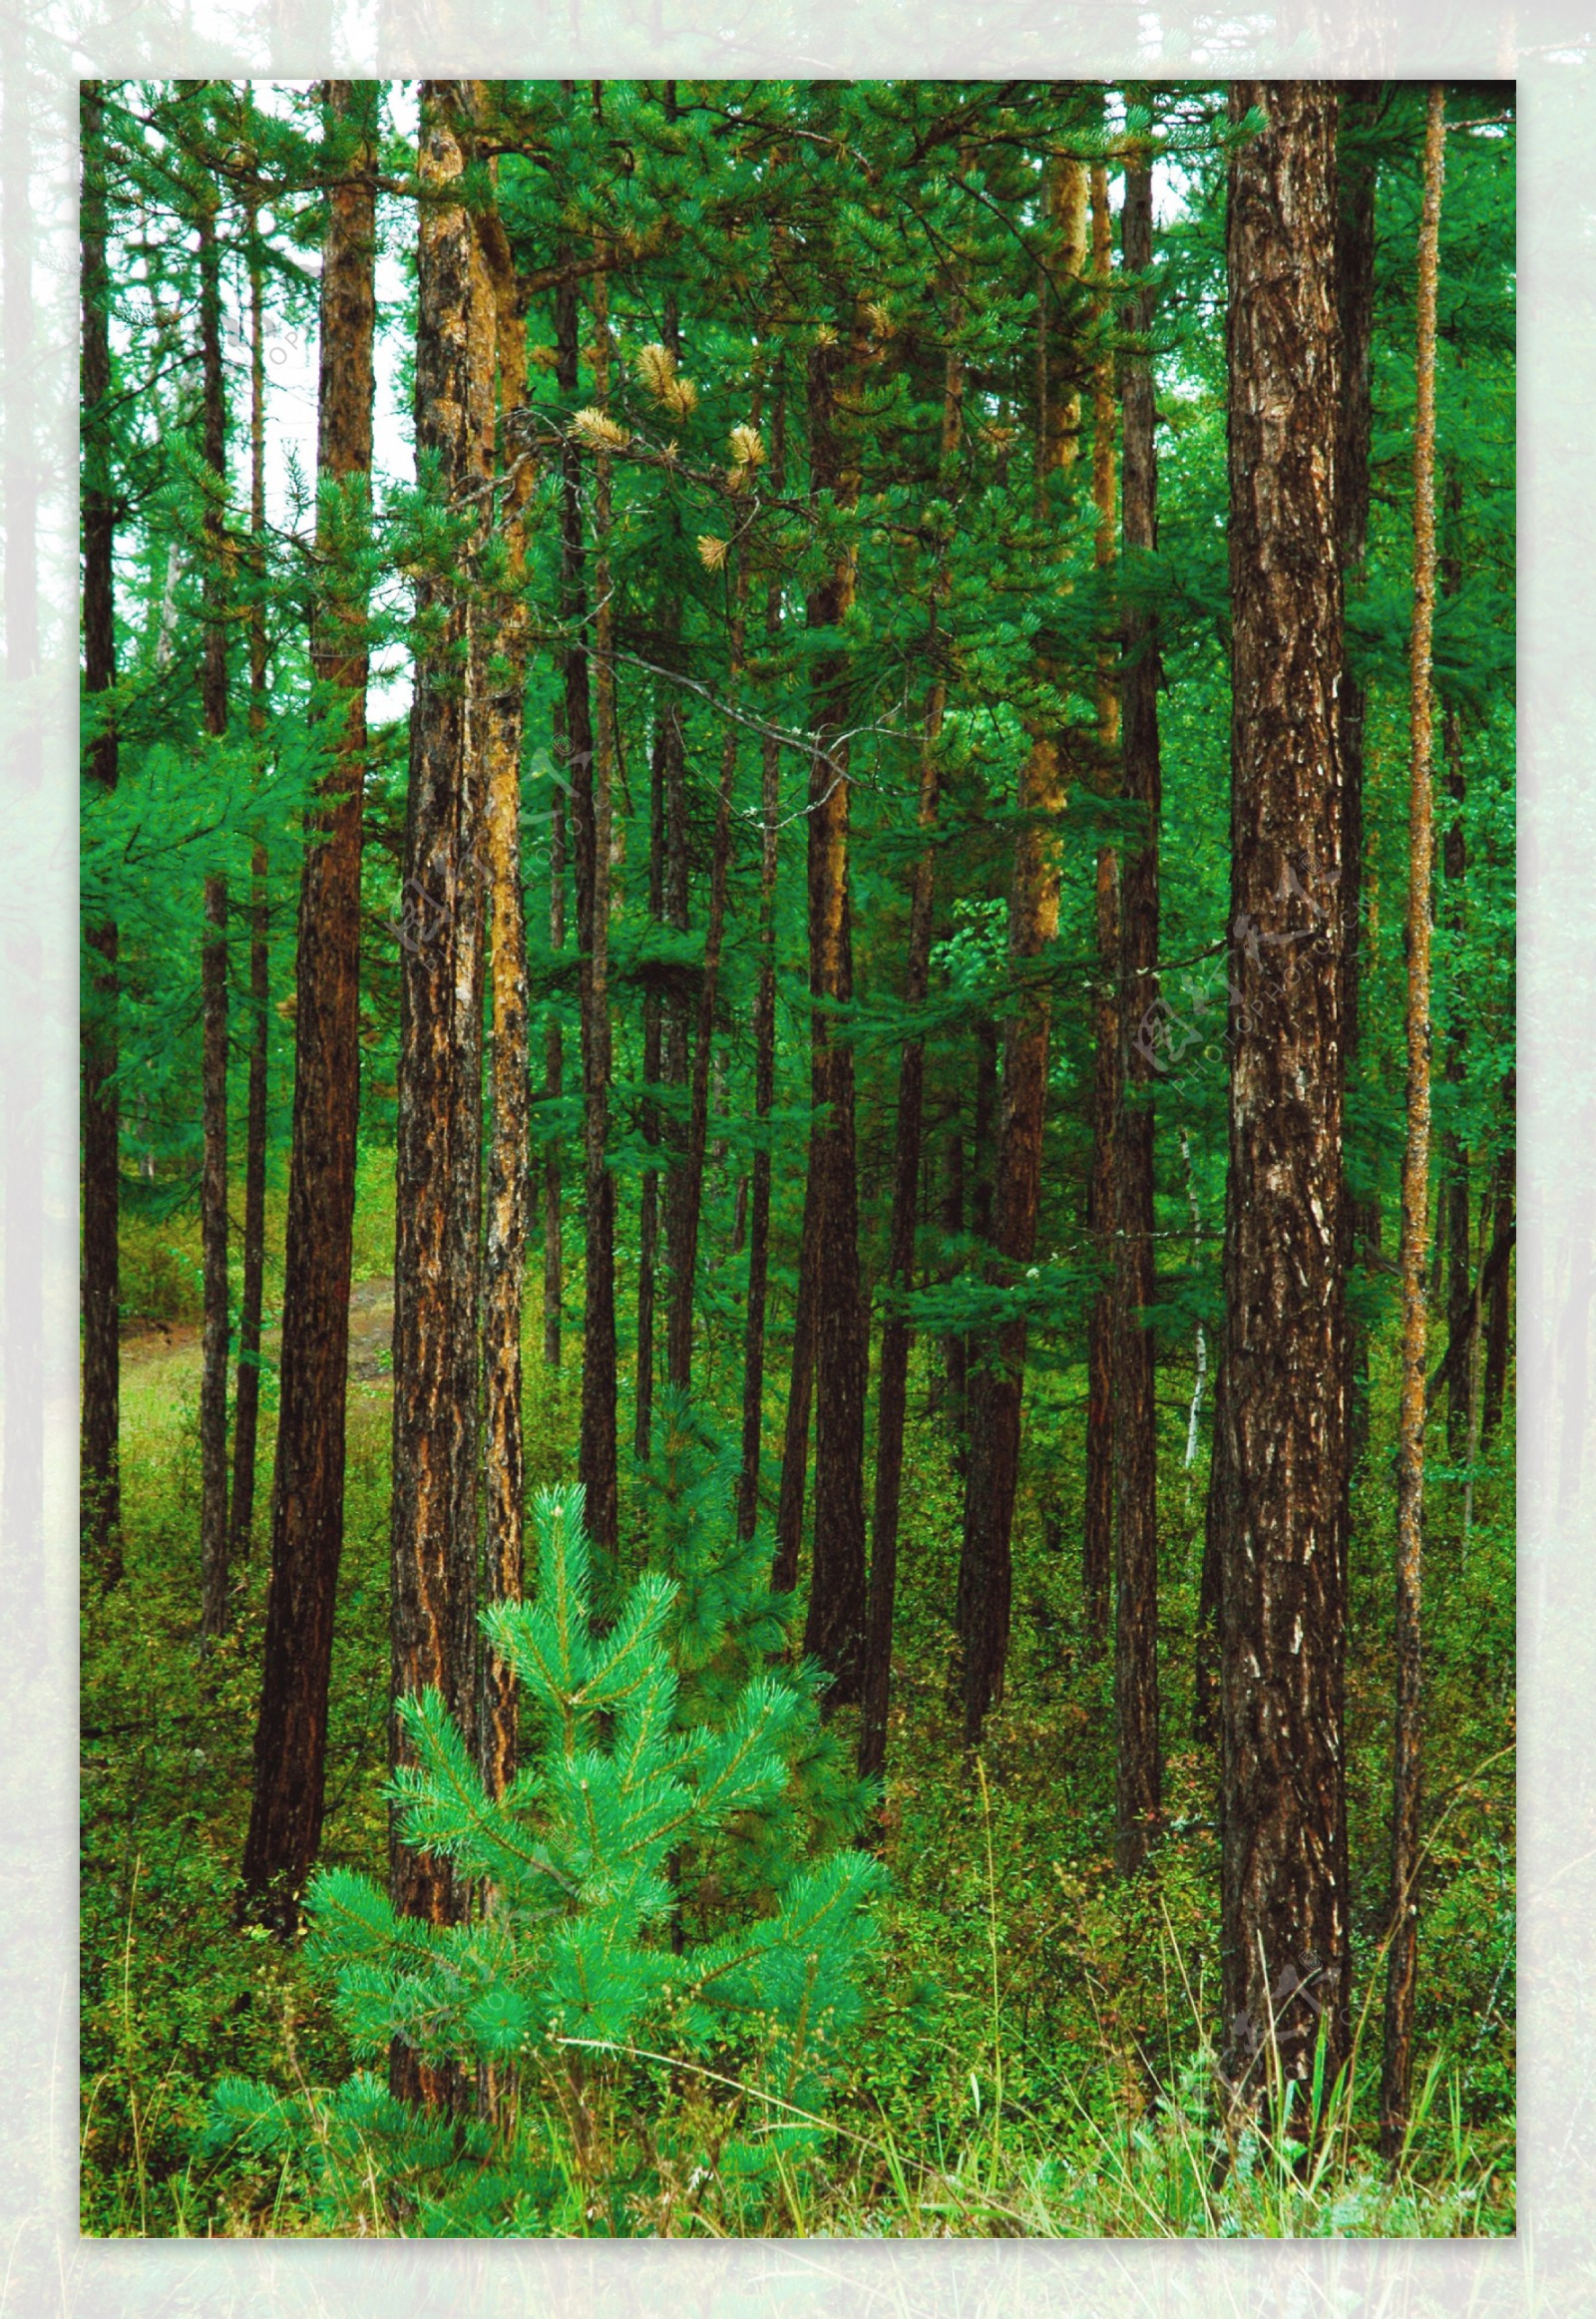 森林阶梯小道绿色养眼高清手机壁纸